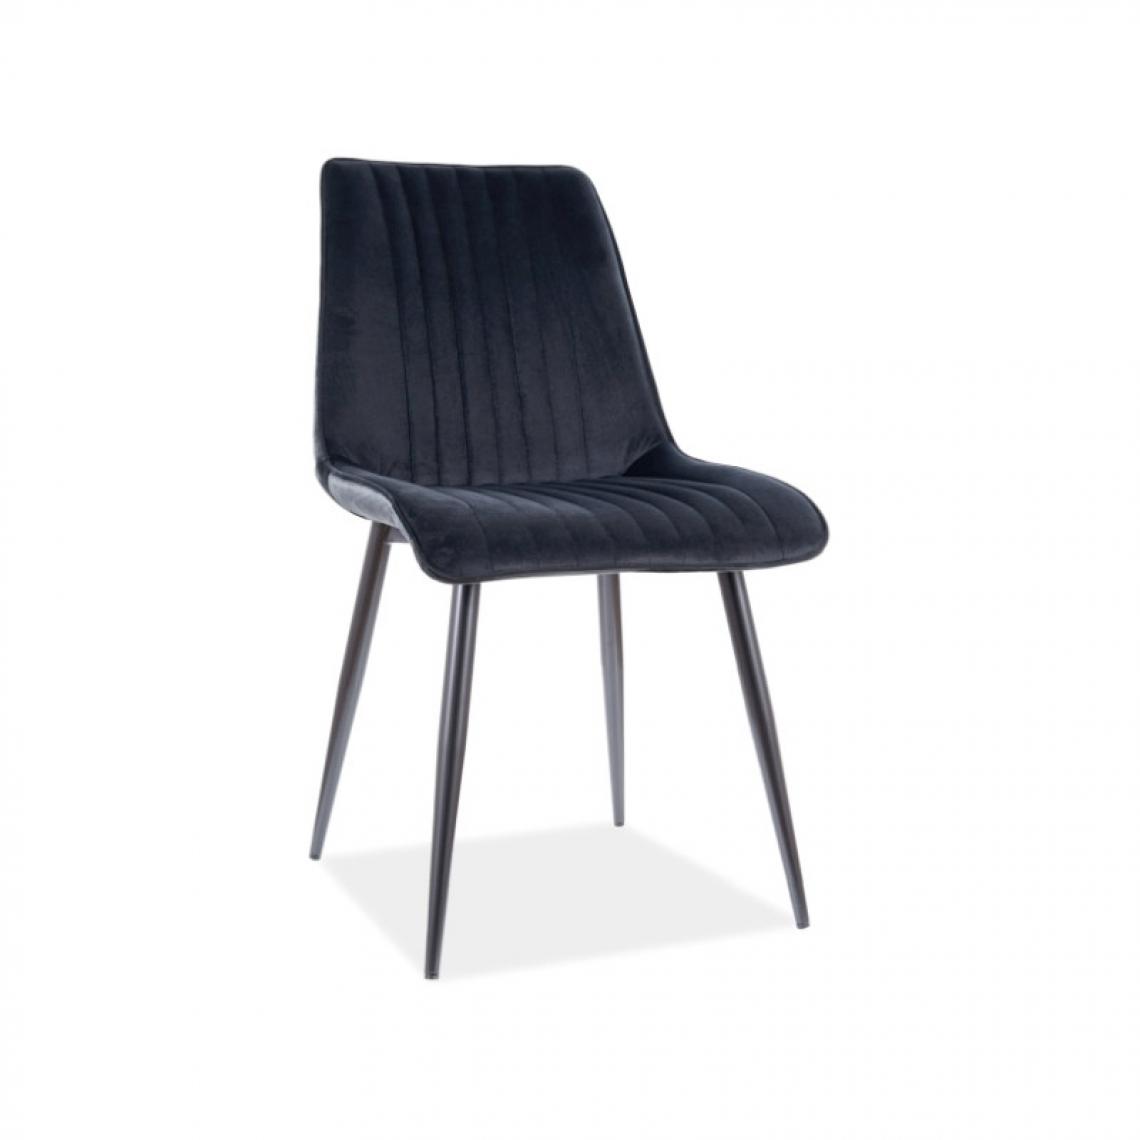 Ac-Deco - Chaise en velours - Kim - L 47 x P 42 x H 88 cm - Noir - Chaises